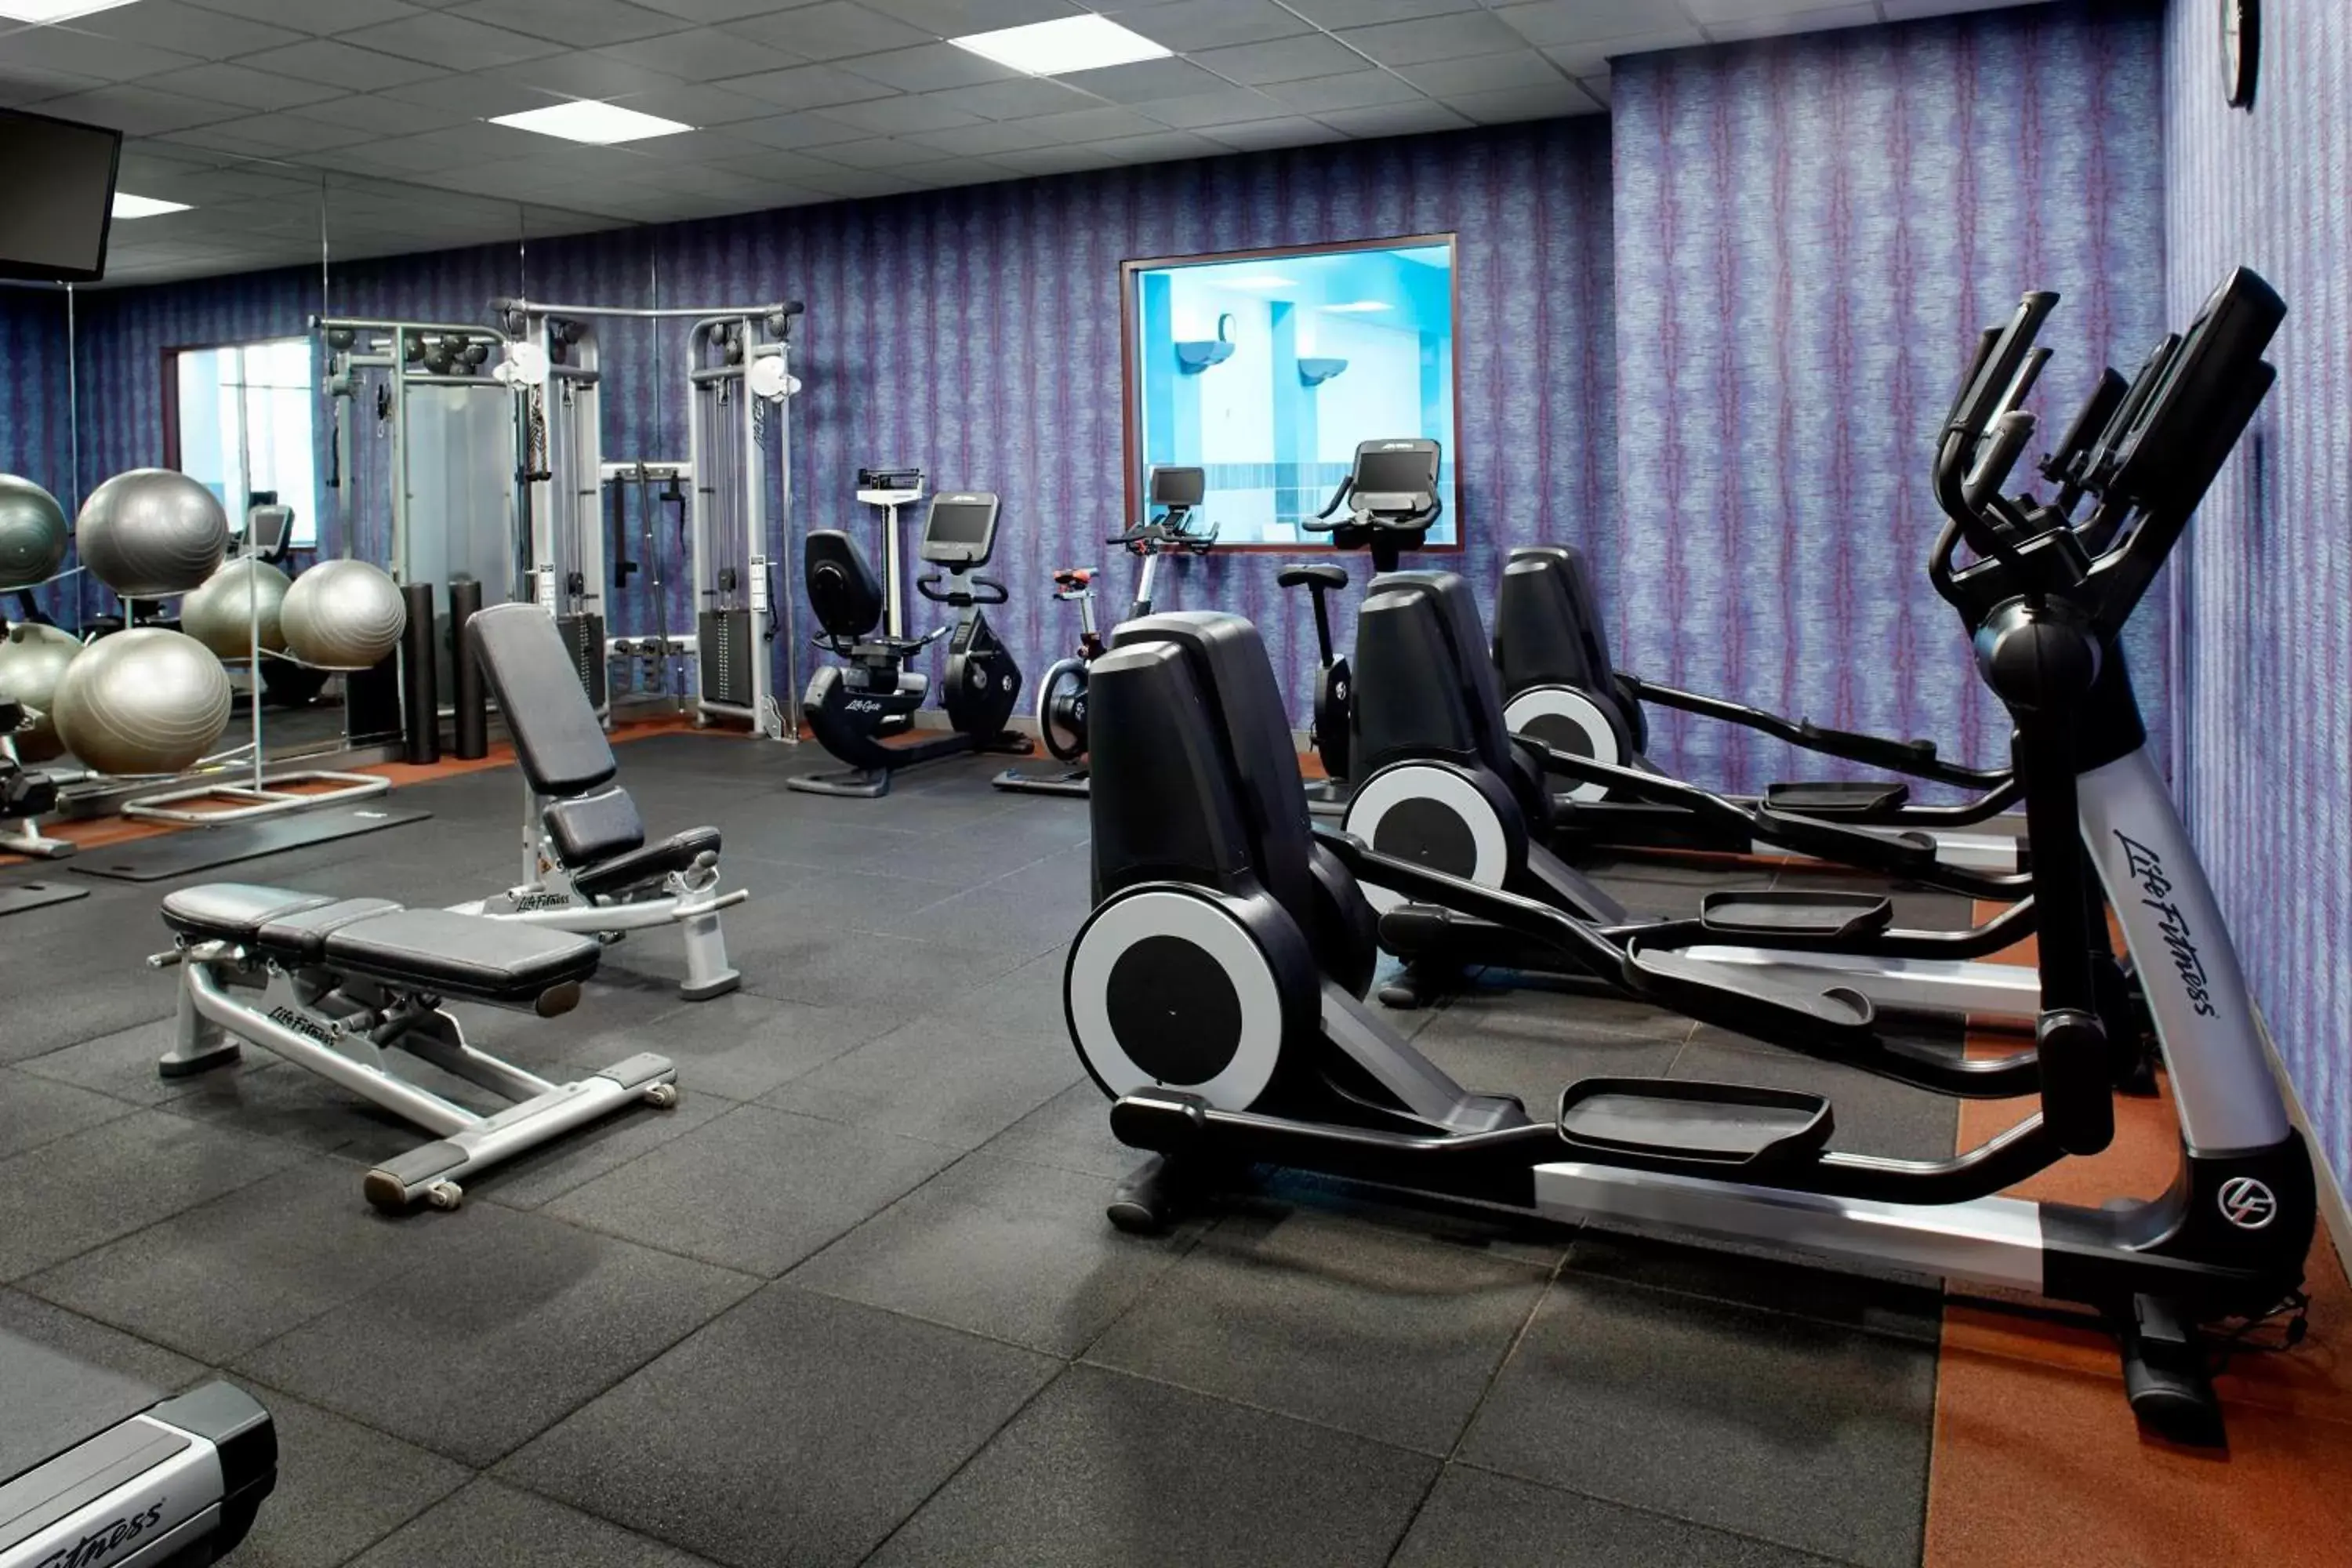 Fitness centre/facilities, Fitness Center/Facilities in Marriott Cincinnati North